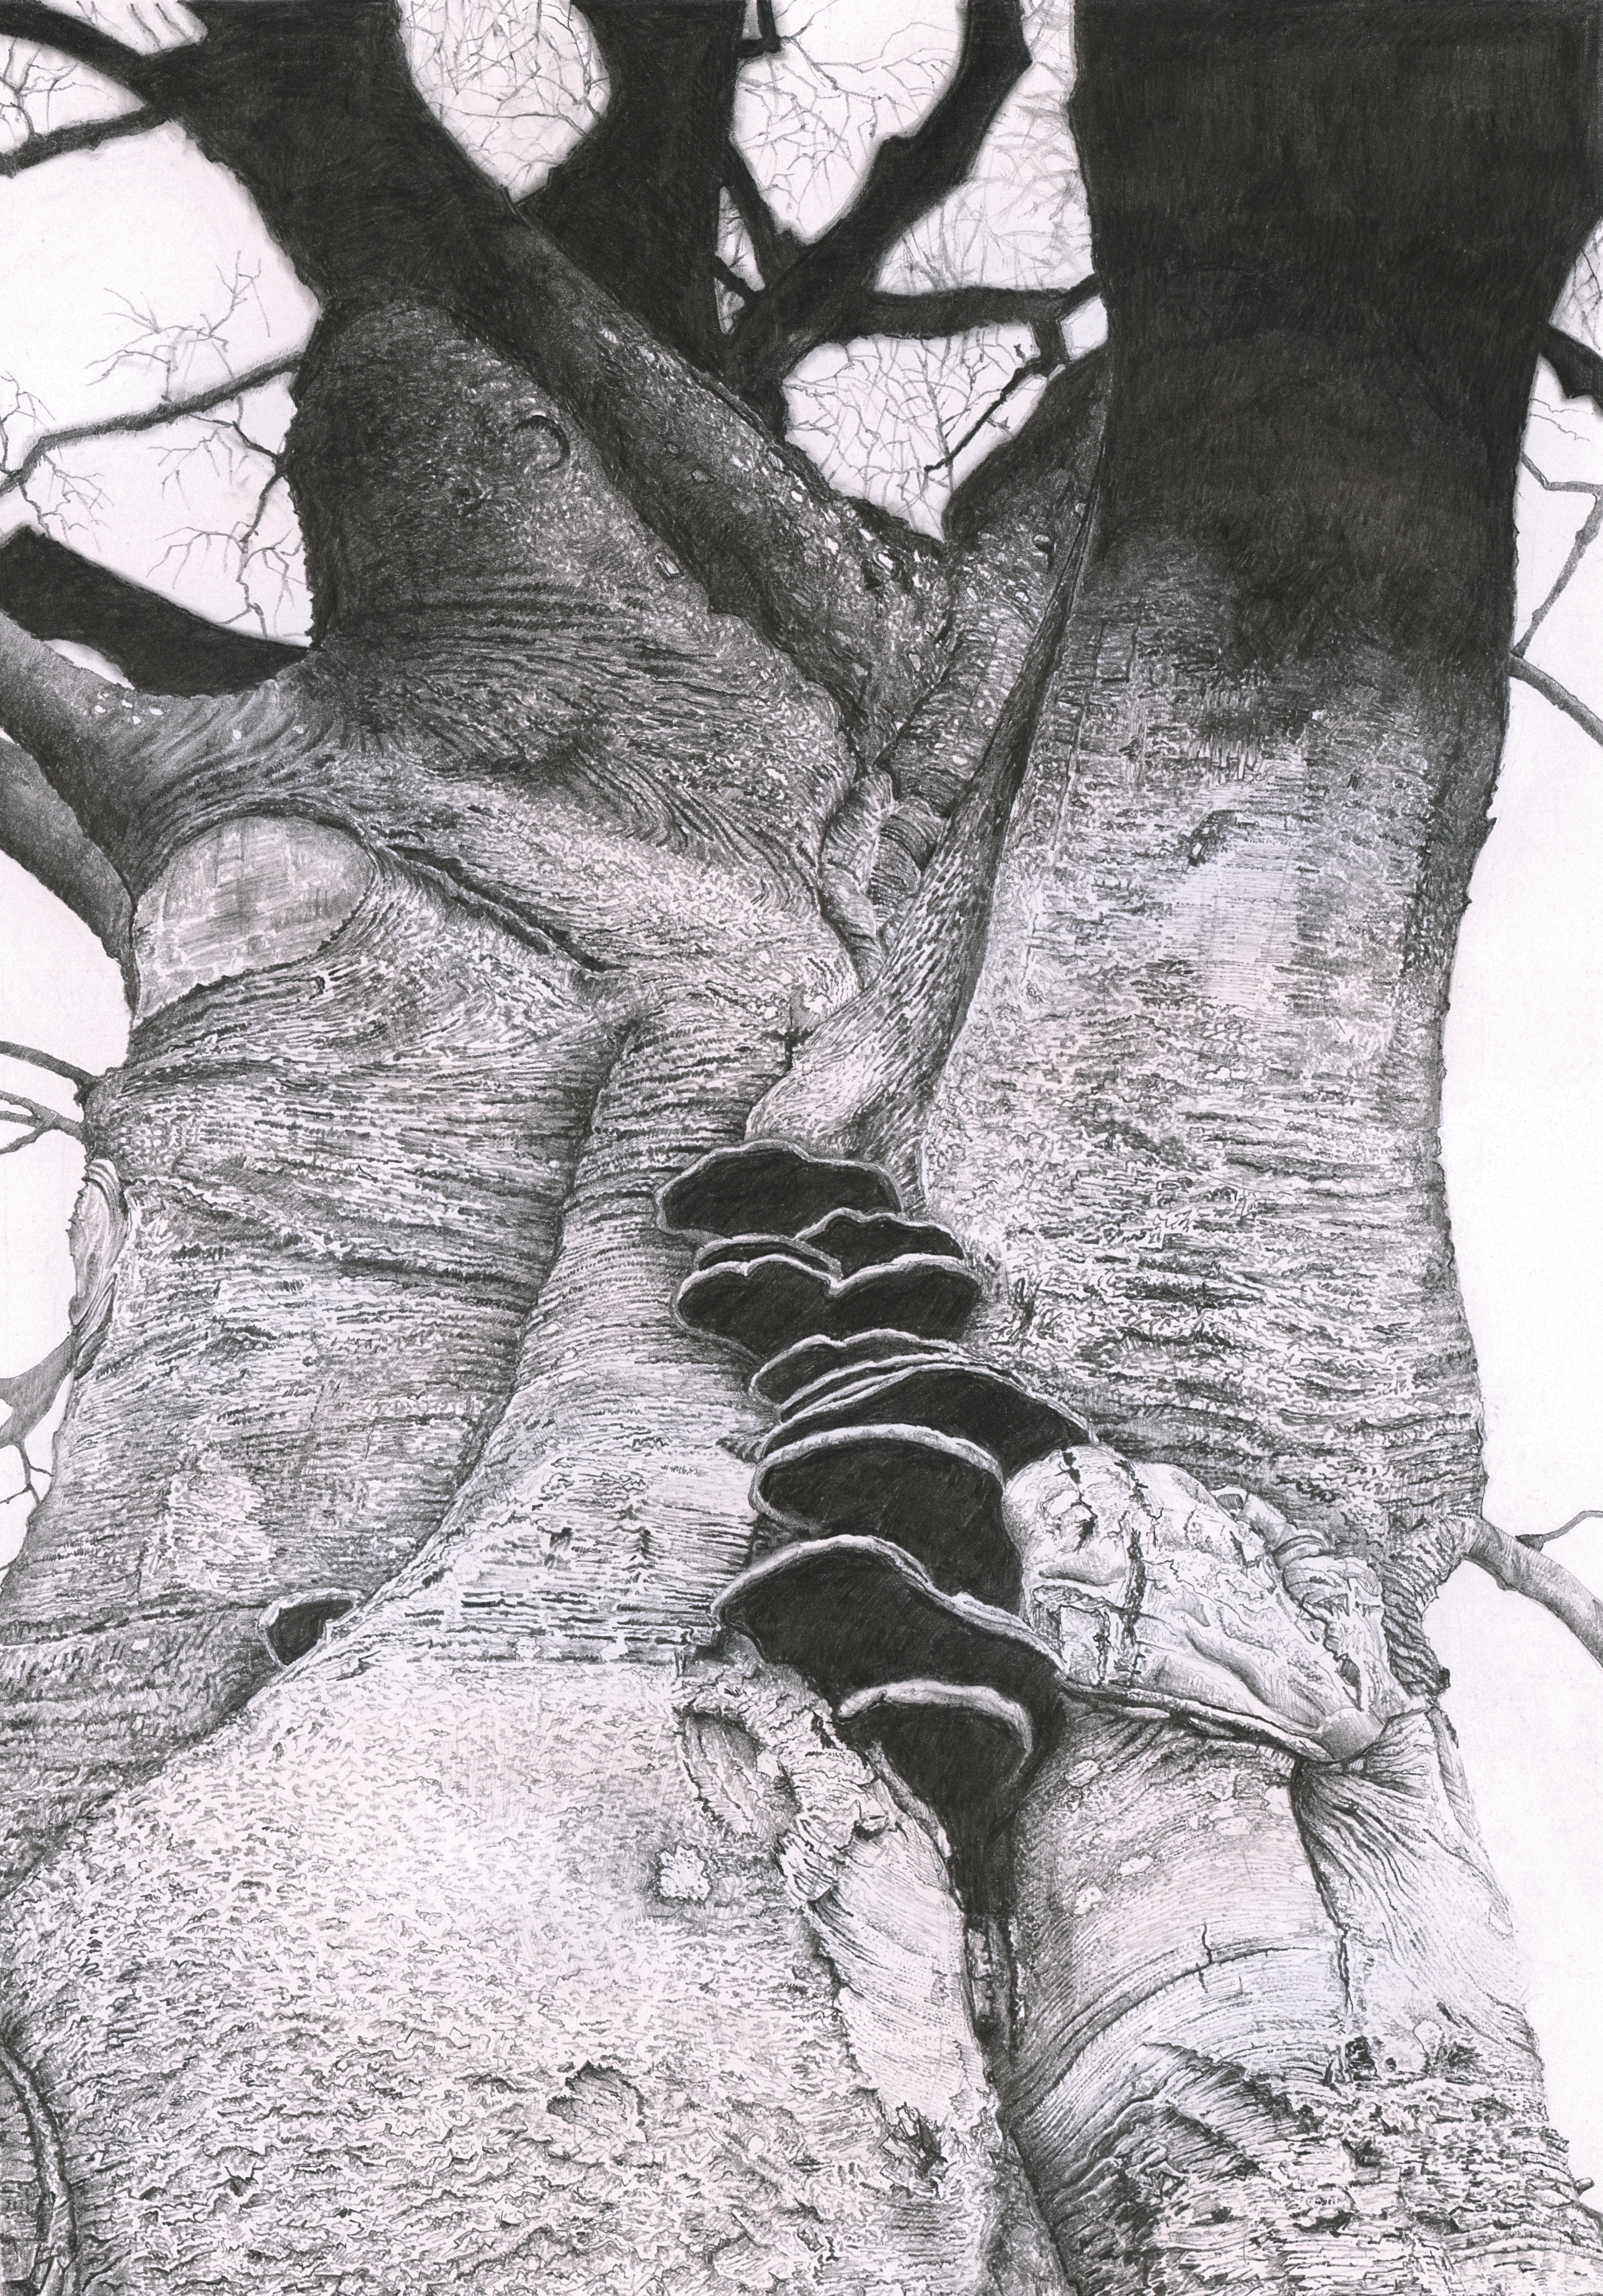 beech/tree/nature/graphite/drawing/dorset/wessex/bark/fungi